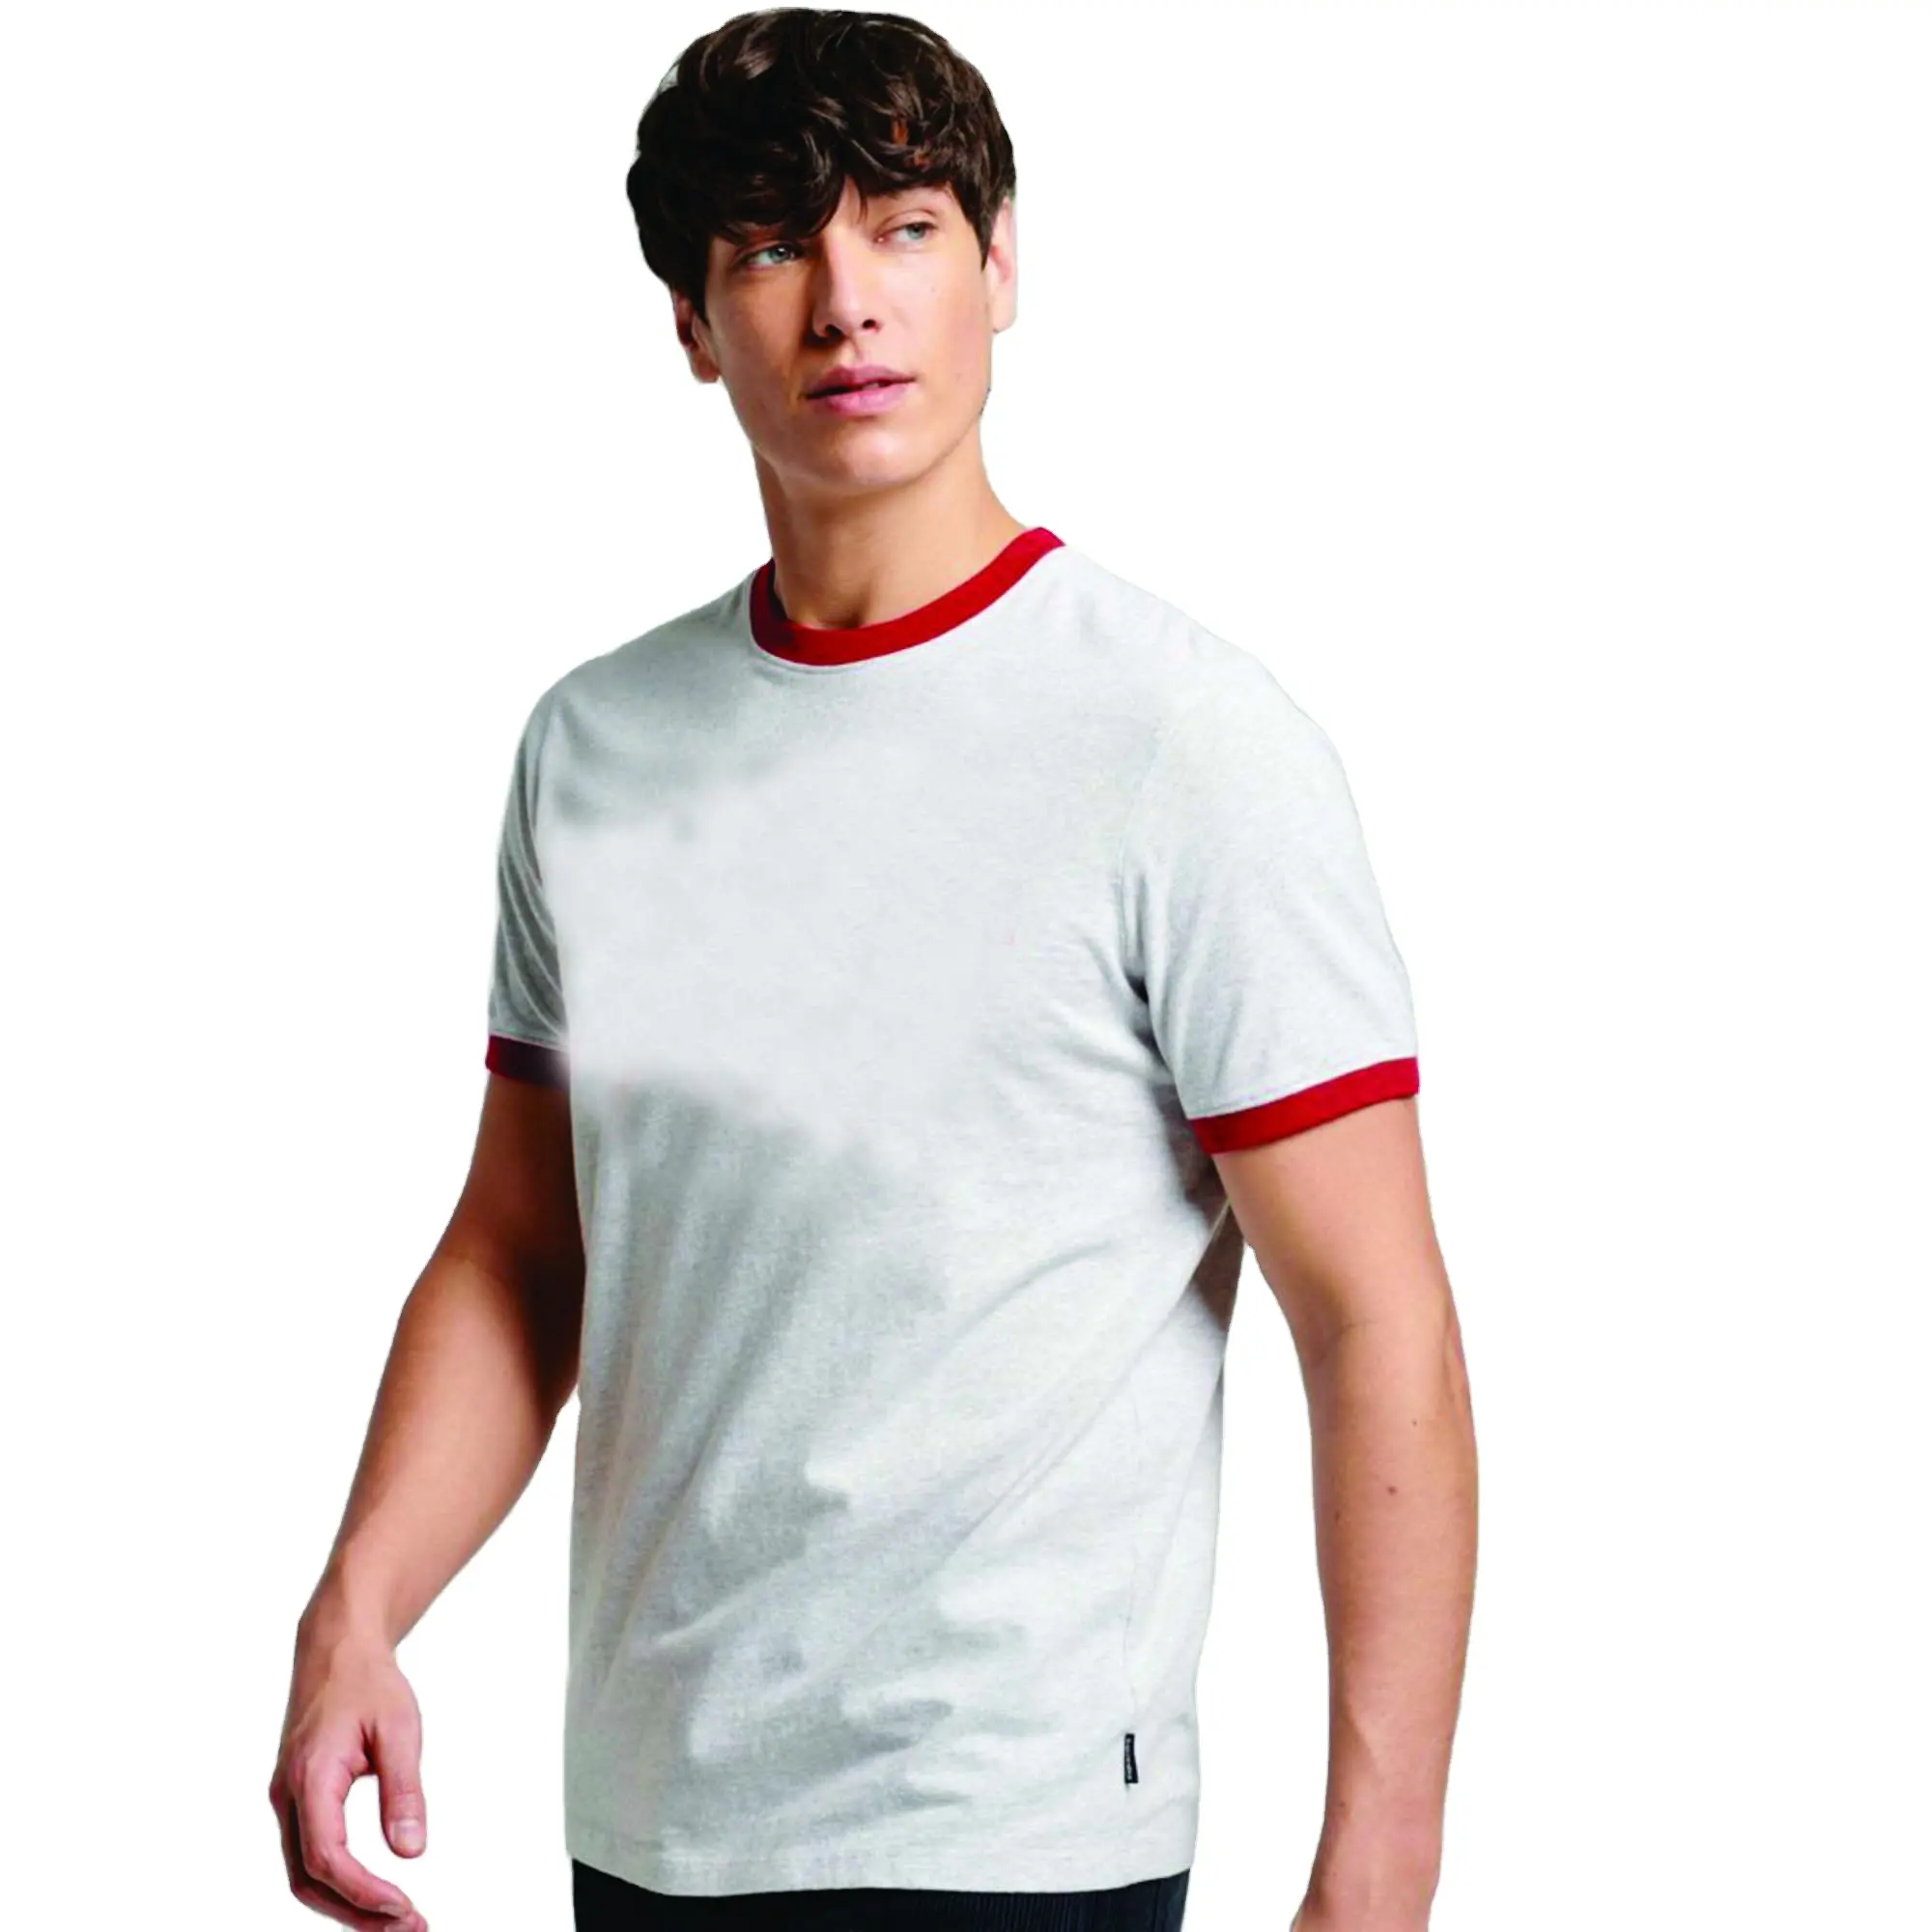 100% algodón contraste Trim camisetas liso en blanco ajustado Top Color Ringer Tee hombres fútbol Jersey camiseta